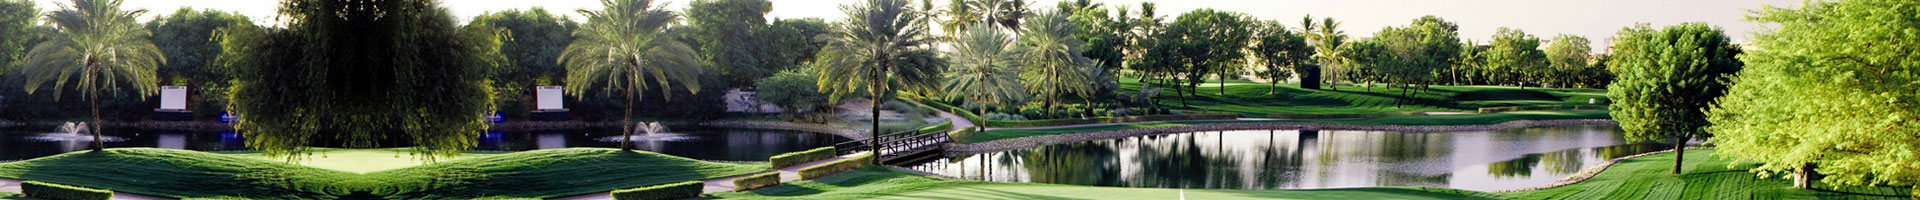 Golf Links Villas Master Plan